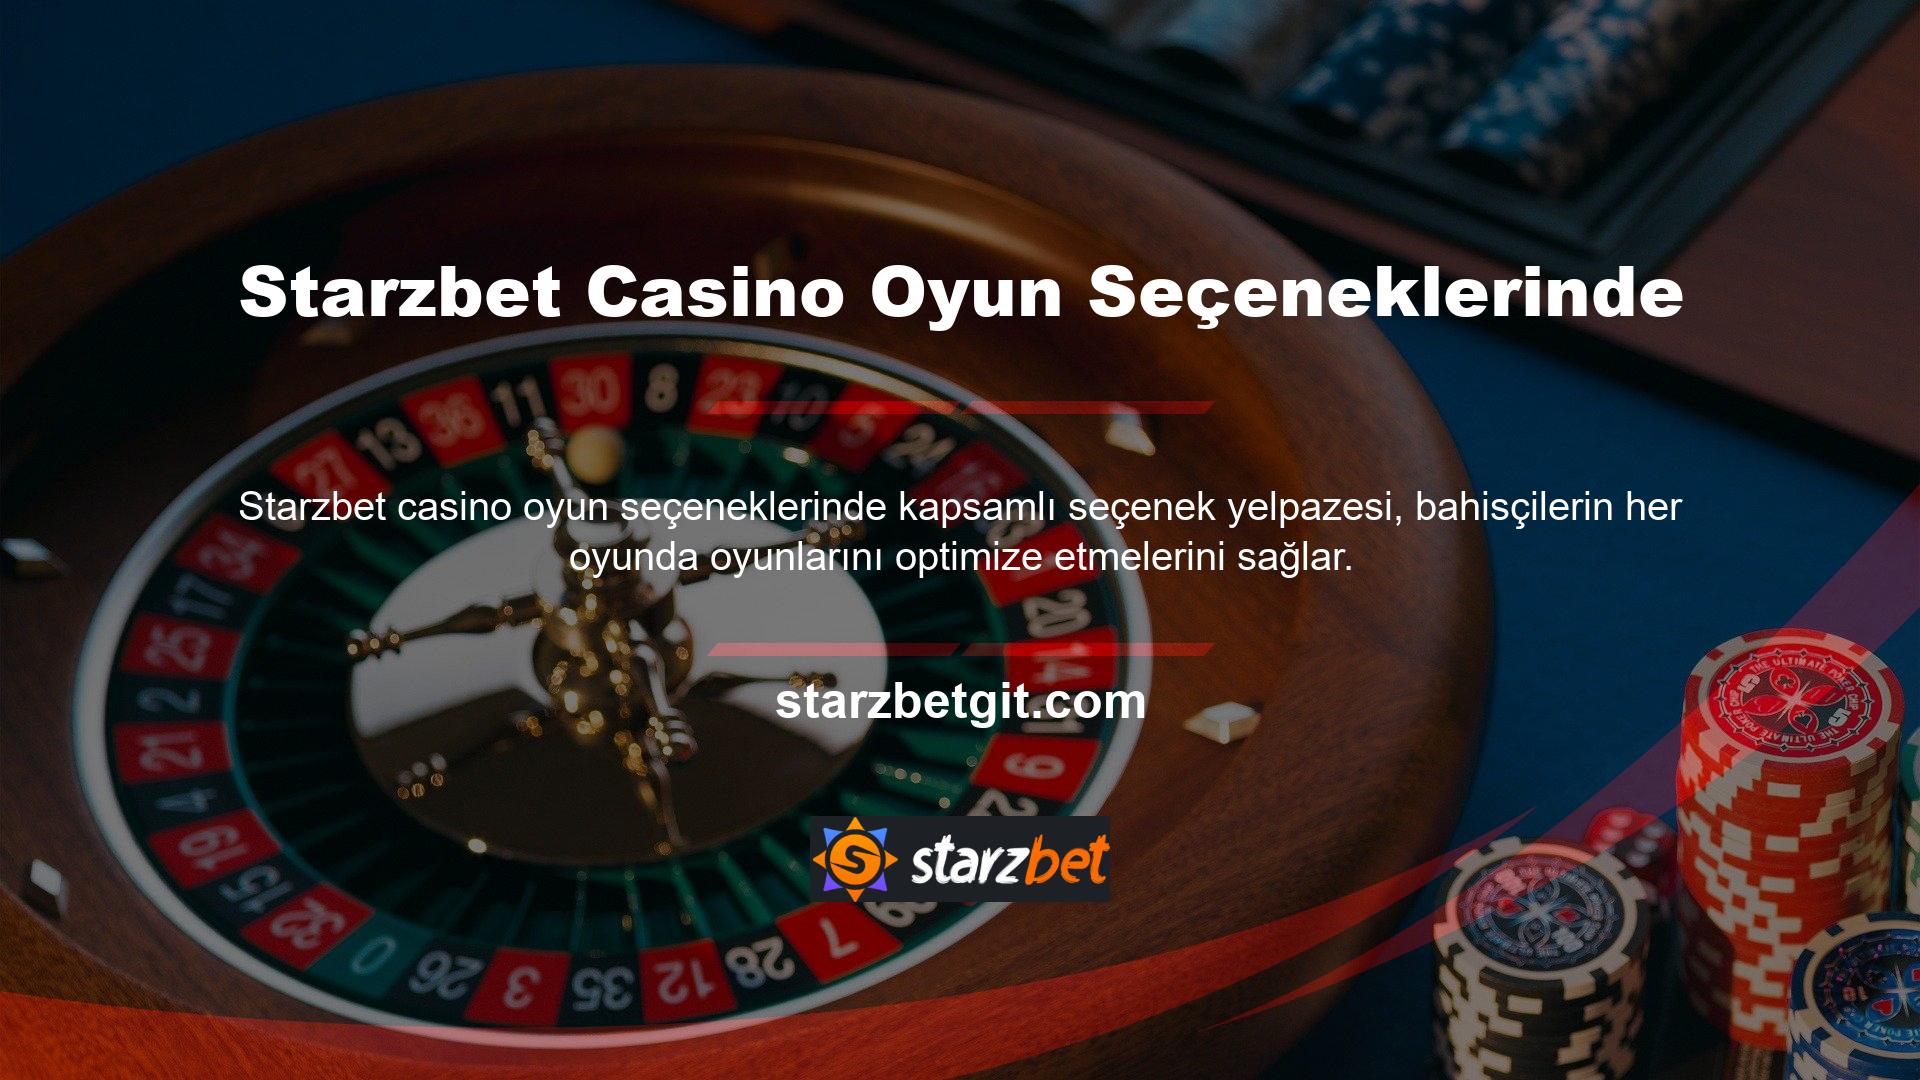 Starzbet Casino Seçeneği, ana sayfalarında bahis meraklıları arasında popüler bir seçimdir ve slot makinesi oyunları oldukça saygındır